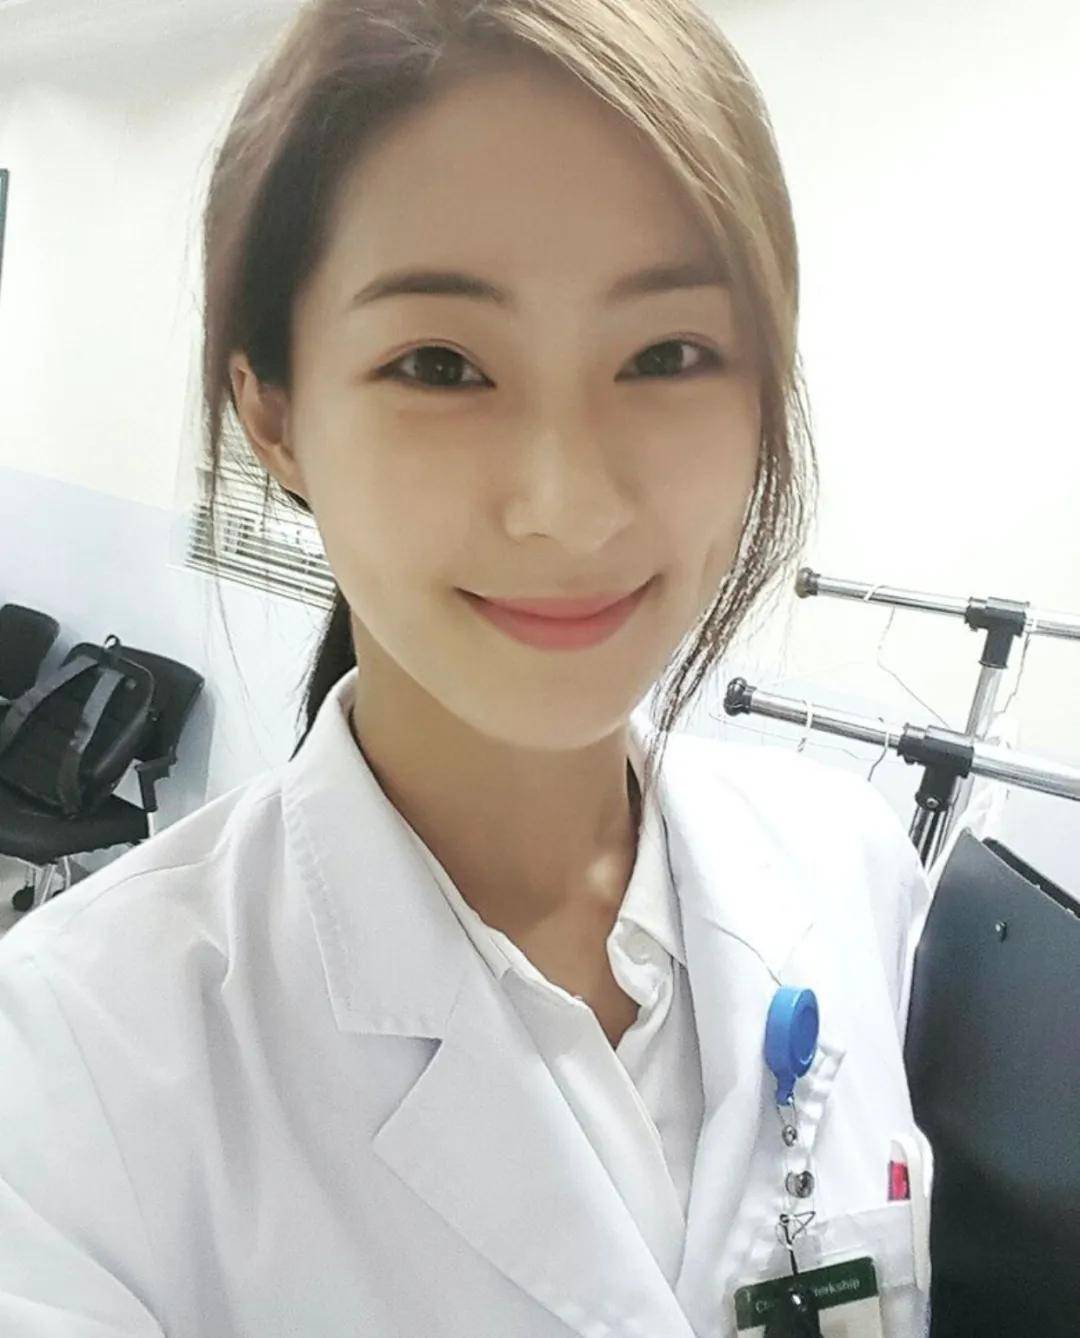 韩国女医生当众脱下白大褂,震惊了整个病房!